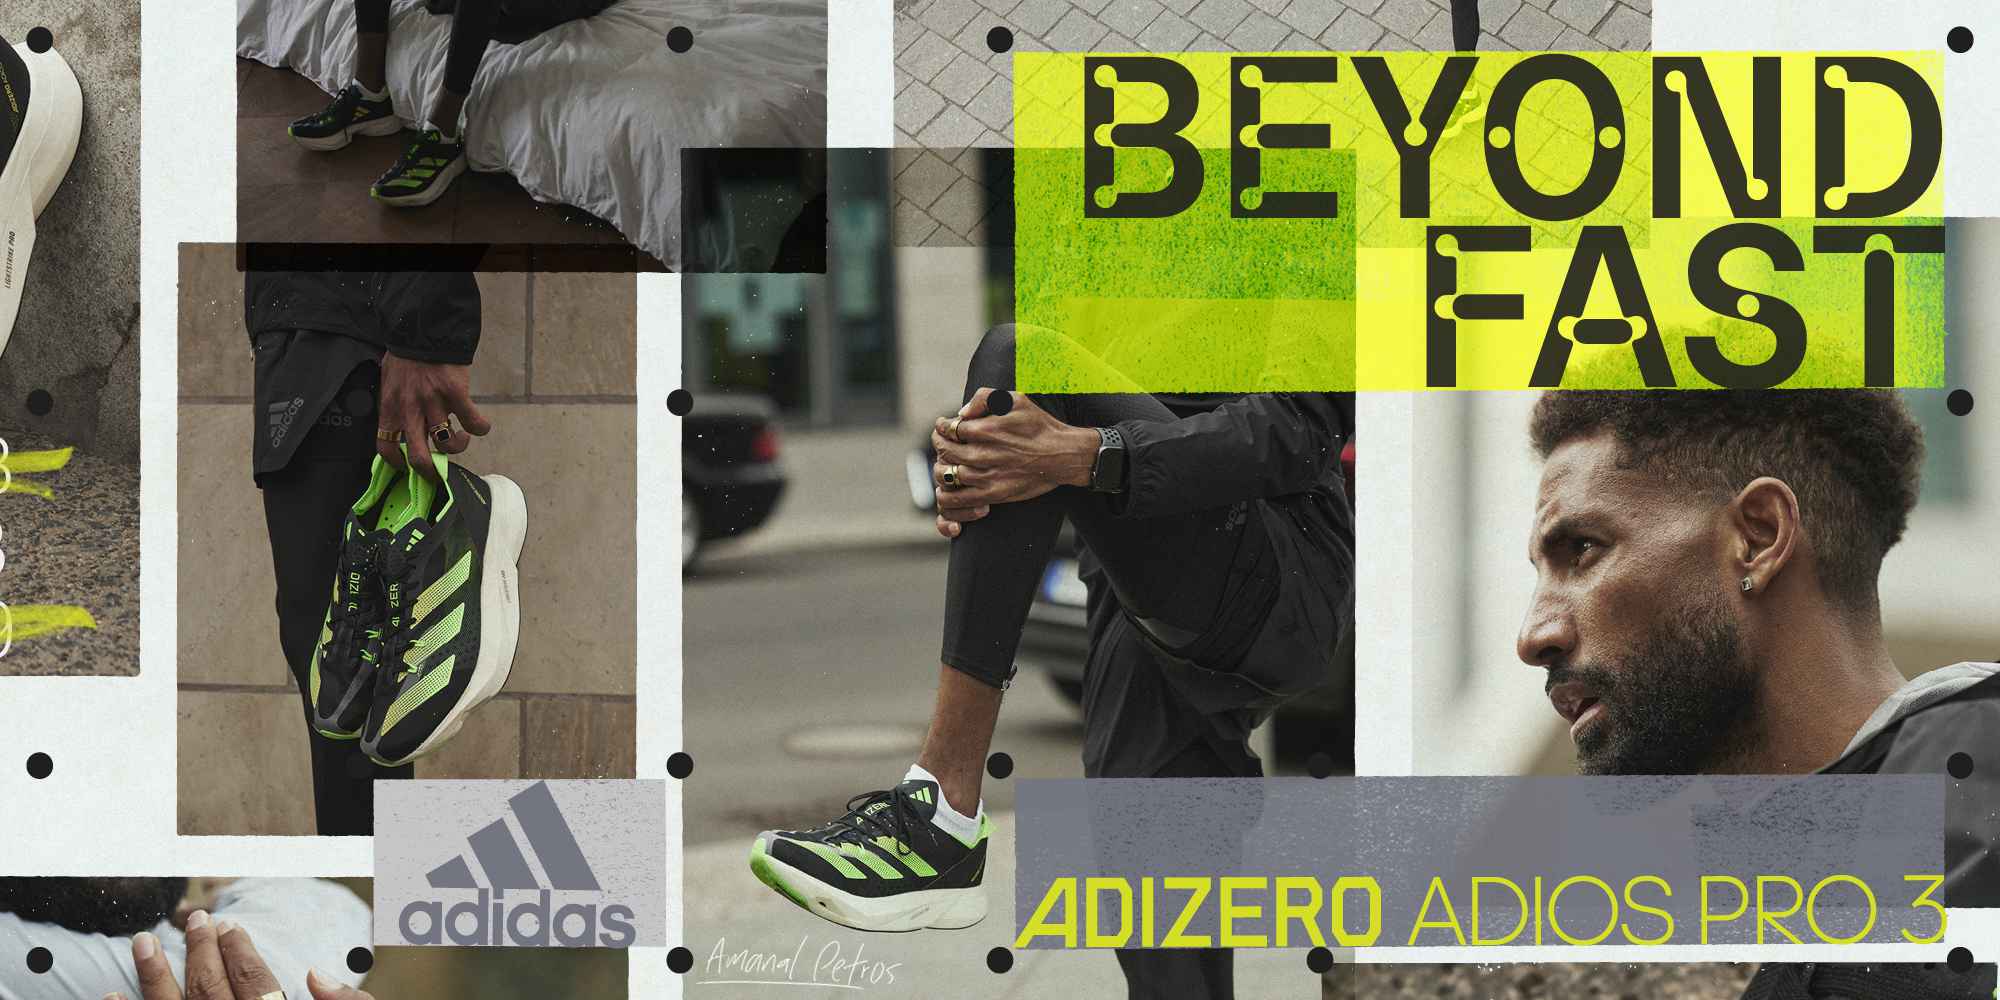 屢破世界紀錄最強勁速系列Adizero家族震撼升級，頂尖跑者首選adidas Adizero Adios Pro 3帶你超越速度極限。官方提供